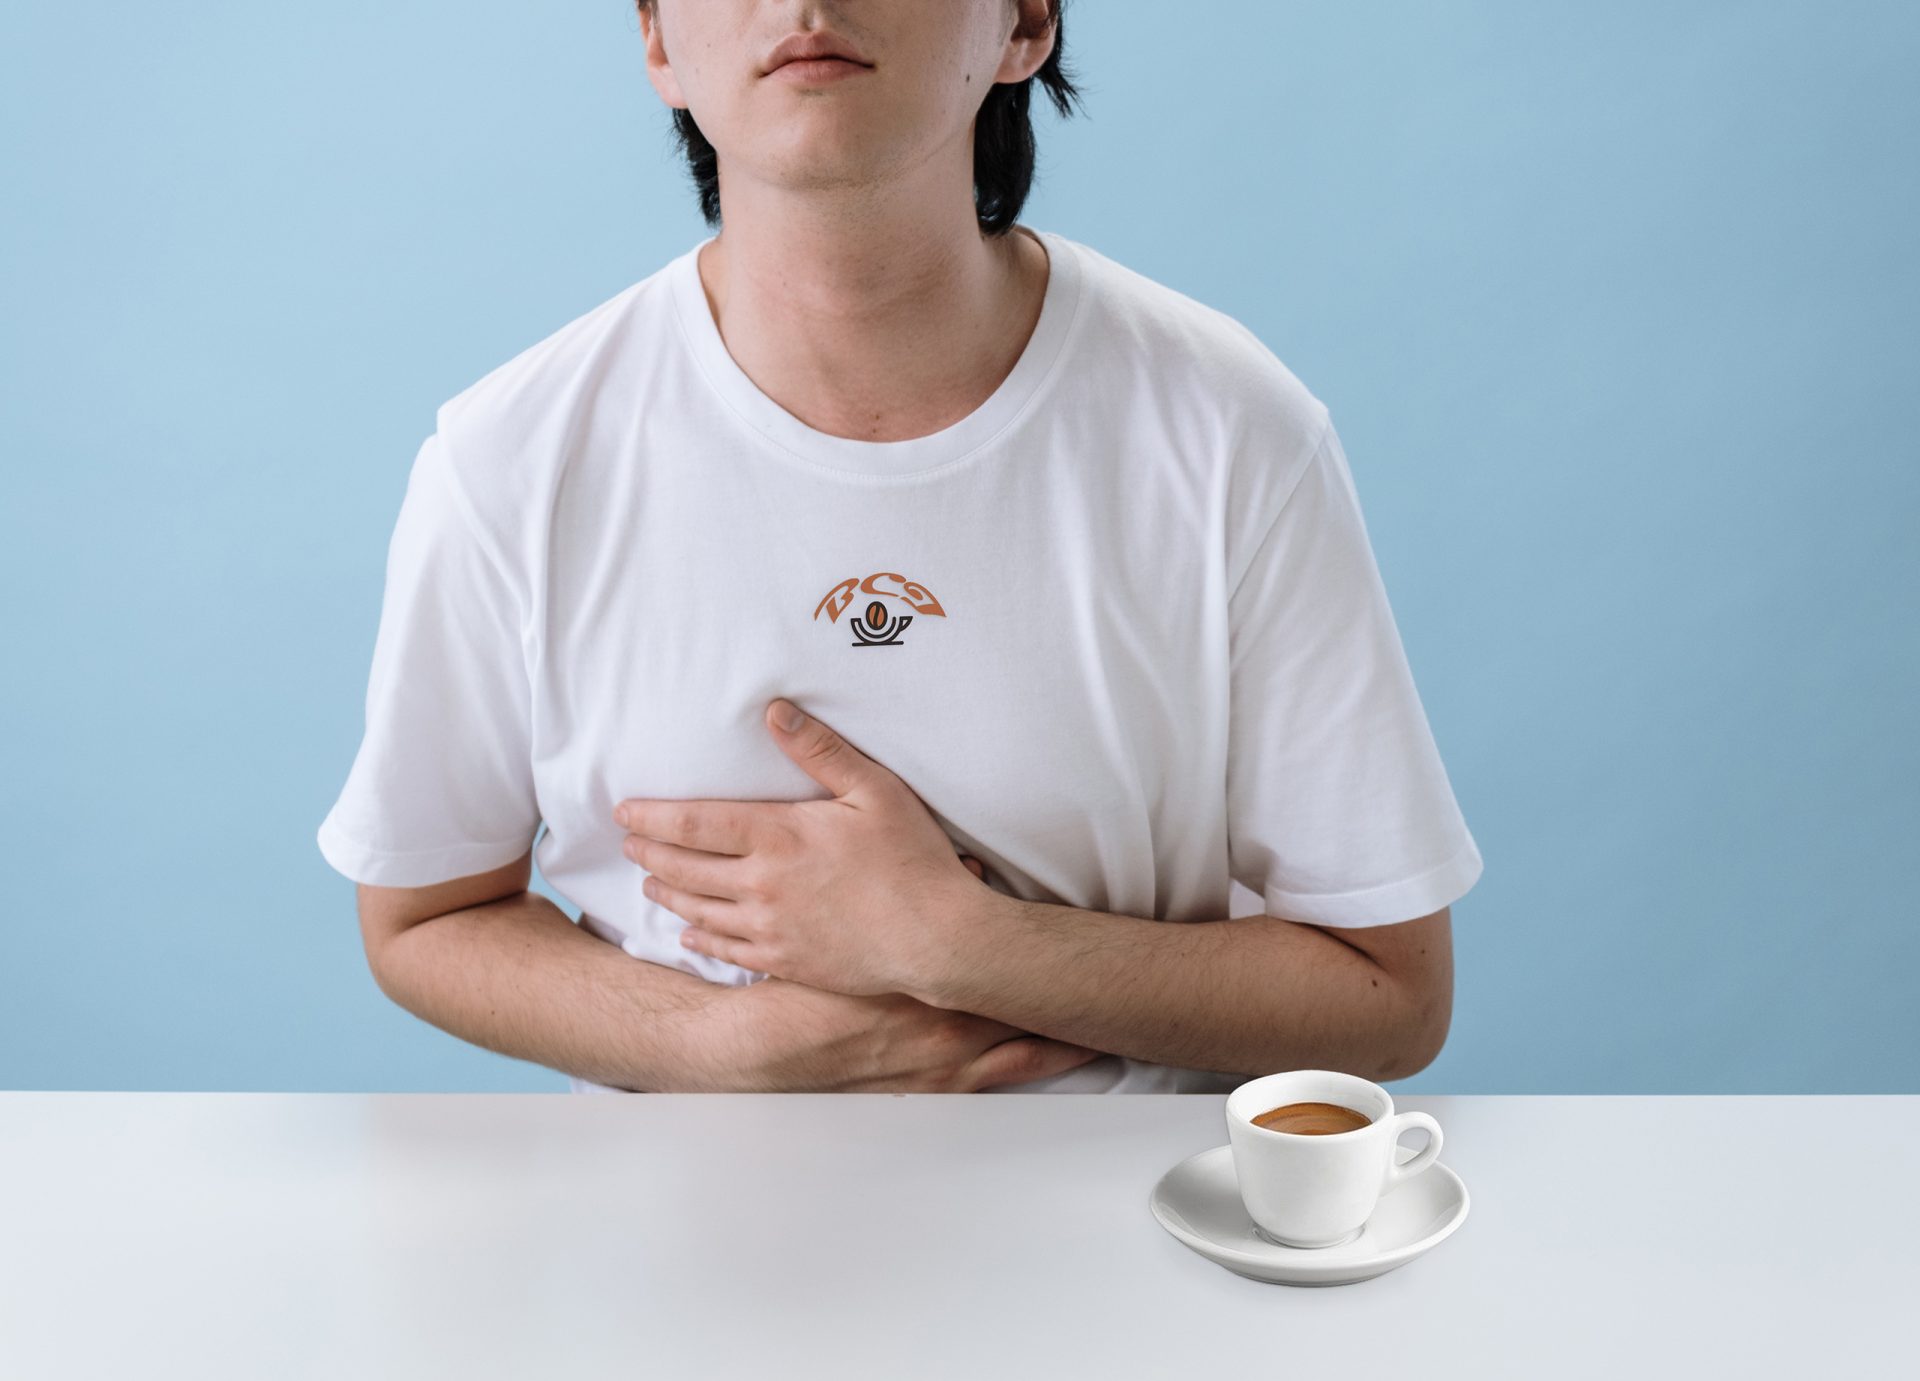 Il caffè non solo ha un effetto tonificante, ma stimola anche la motilità del colon. Pertanto, 2-3 o più tazze di caffè al giorno possono causare diarrea. La diarrea può essere causata anche dal latte o dai dolcificanti artificiali aggiunti al caffè.